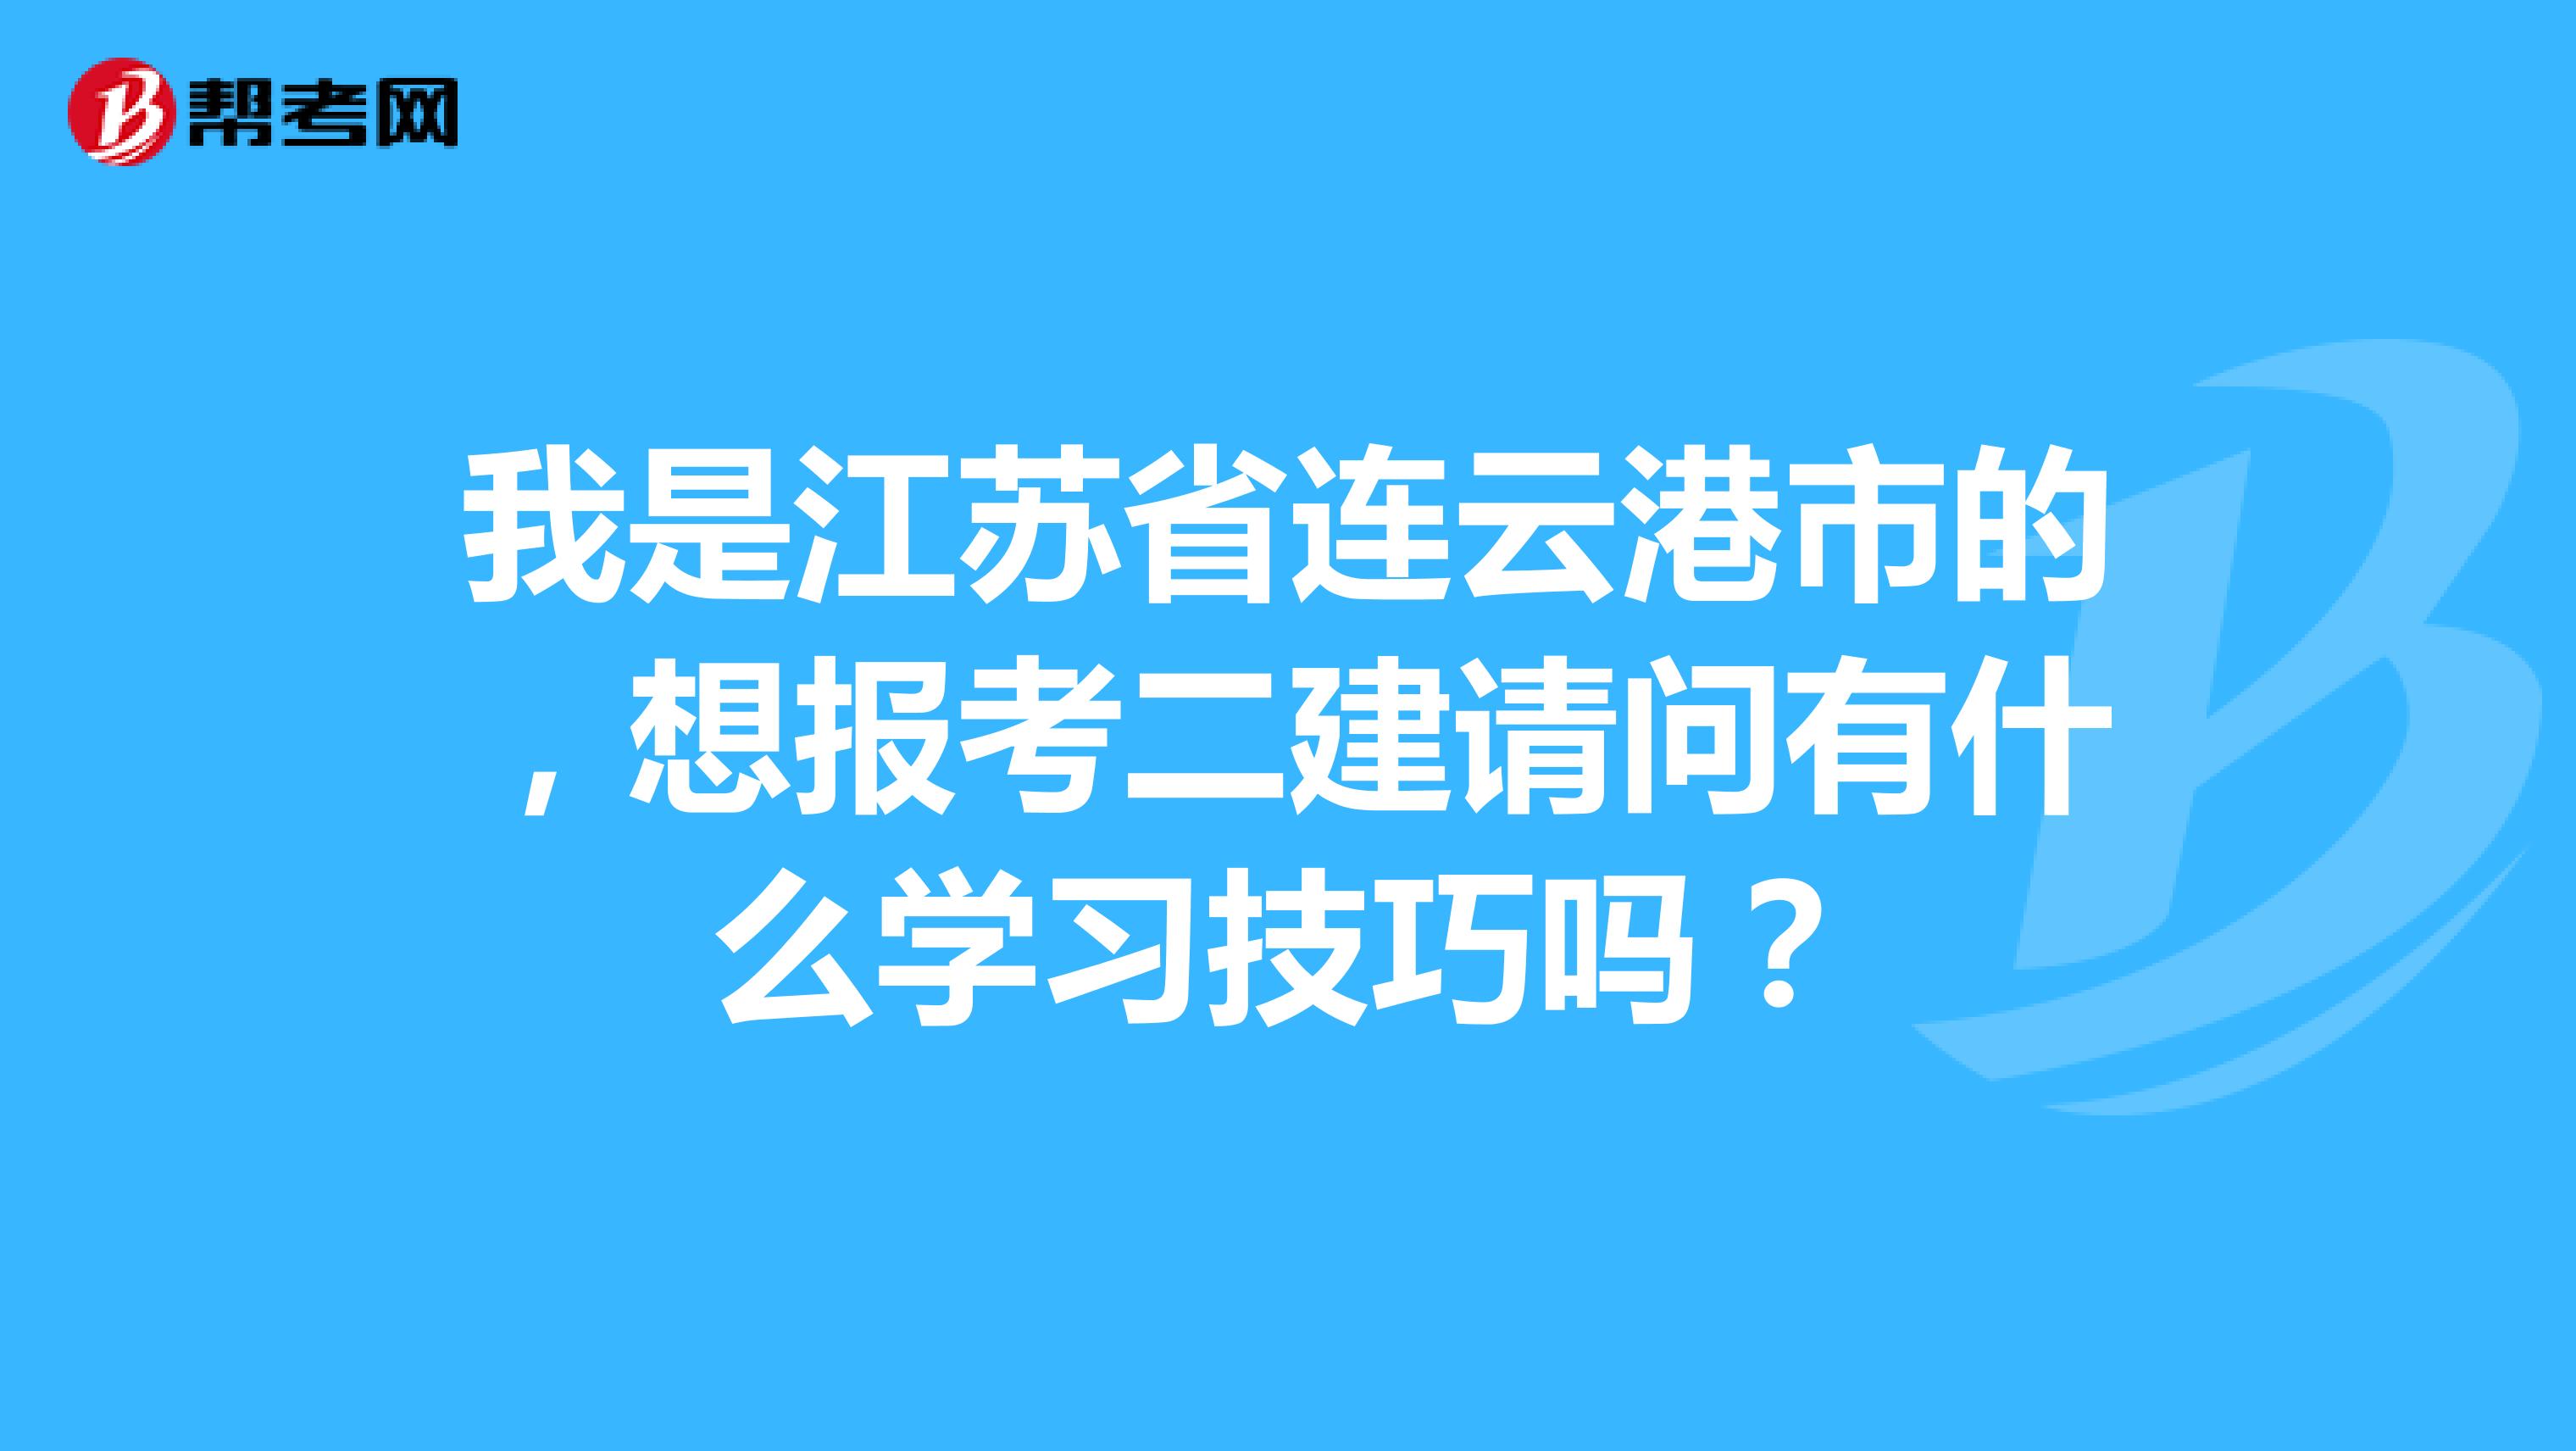 我是江苏省连云港市的，想报考二建请问有什么学习技巧吗？